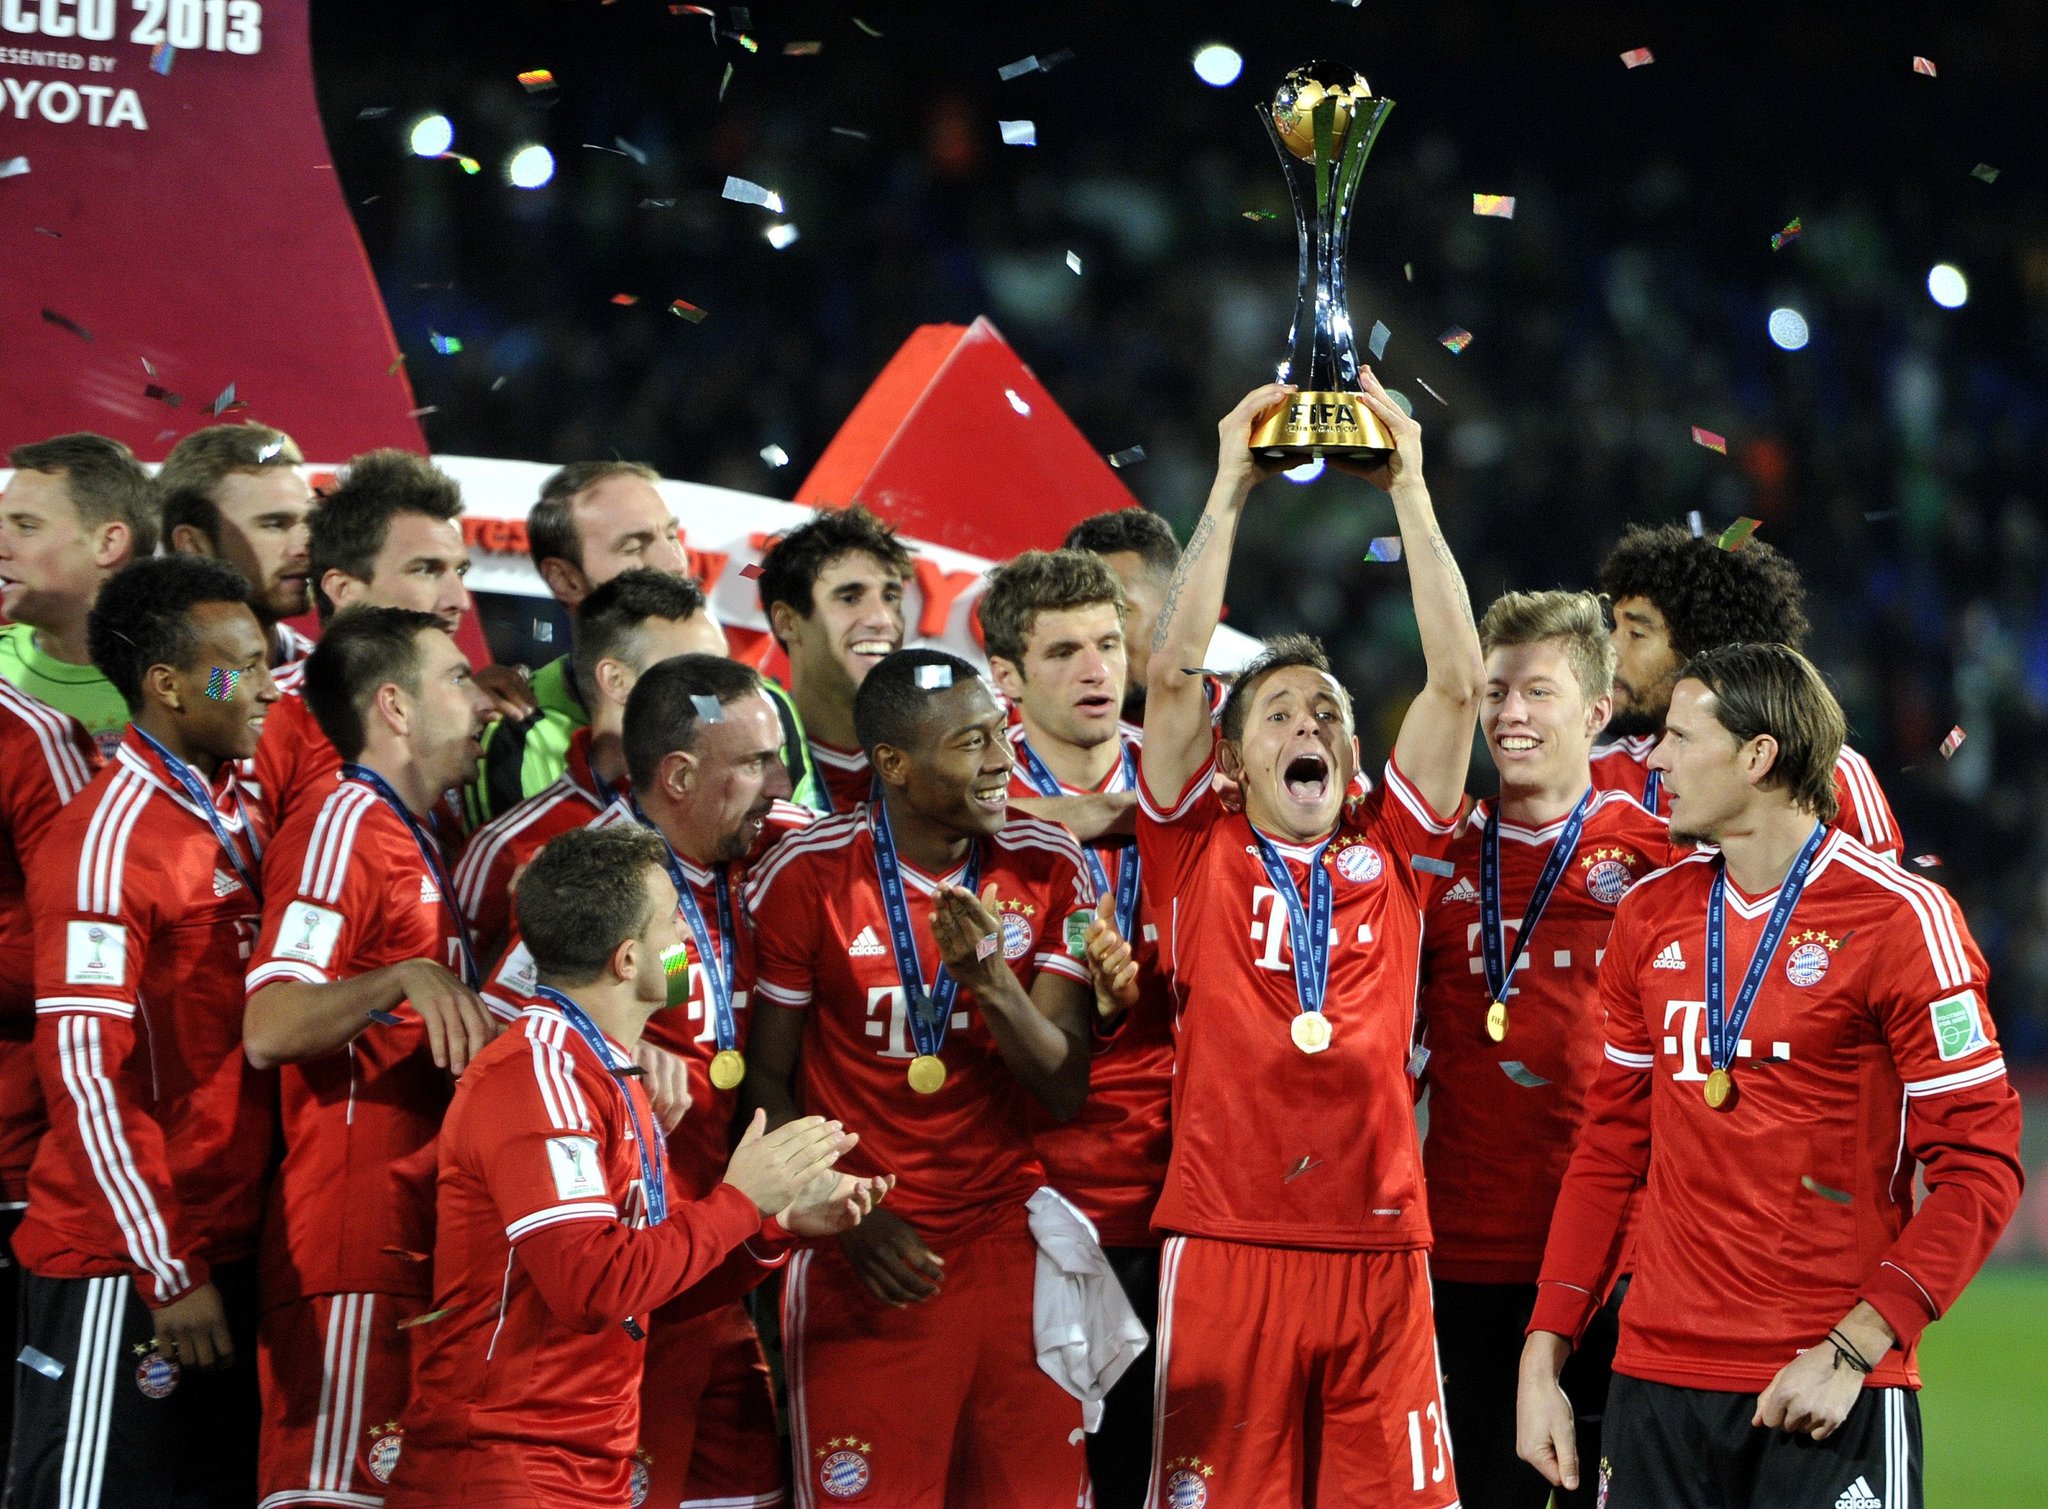 A temporada de 2012/13 foi de ouro: afinal, o time levou o caneco alemão, a Champions  e o Mundial (foto).